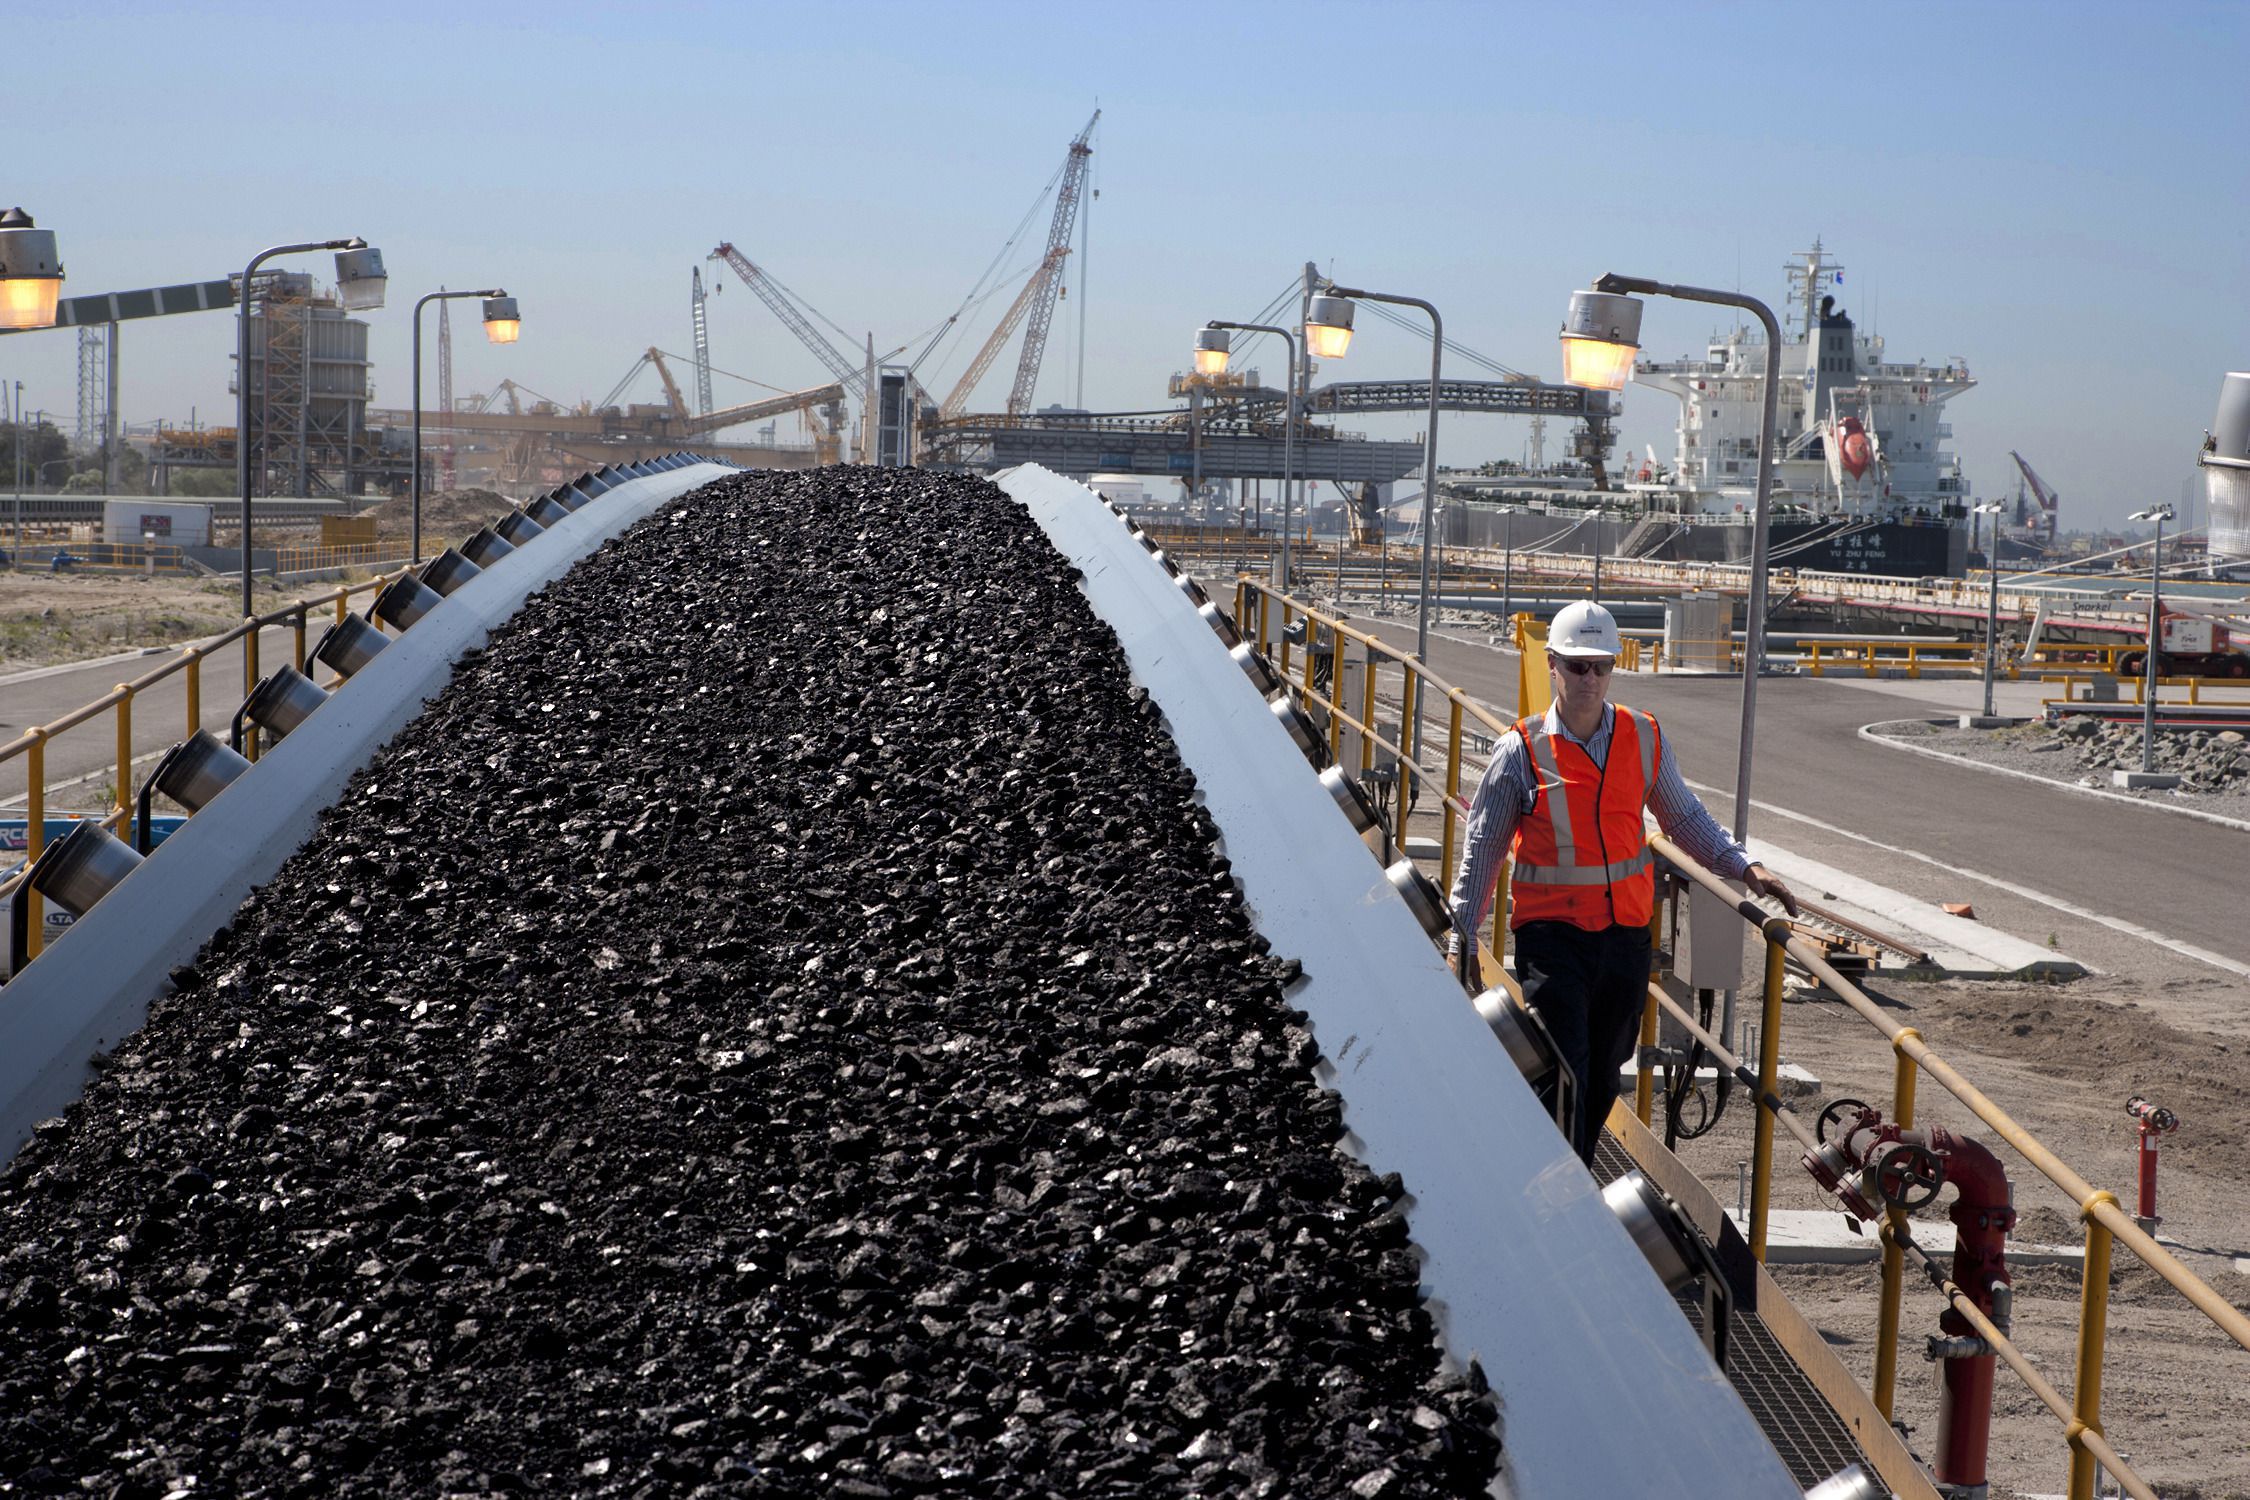 Експериментальна промисловість: в Австралії почнуть перетворювати вугілля на водень. Японія стане партнером у цьому проєкті.